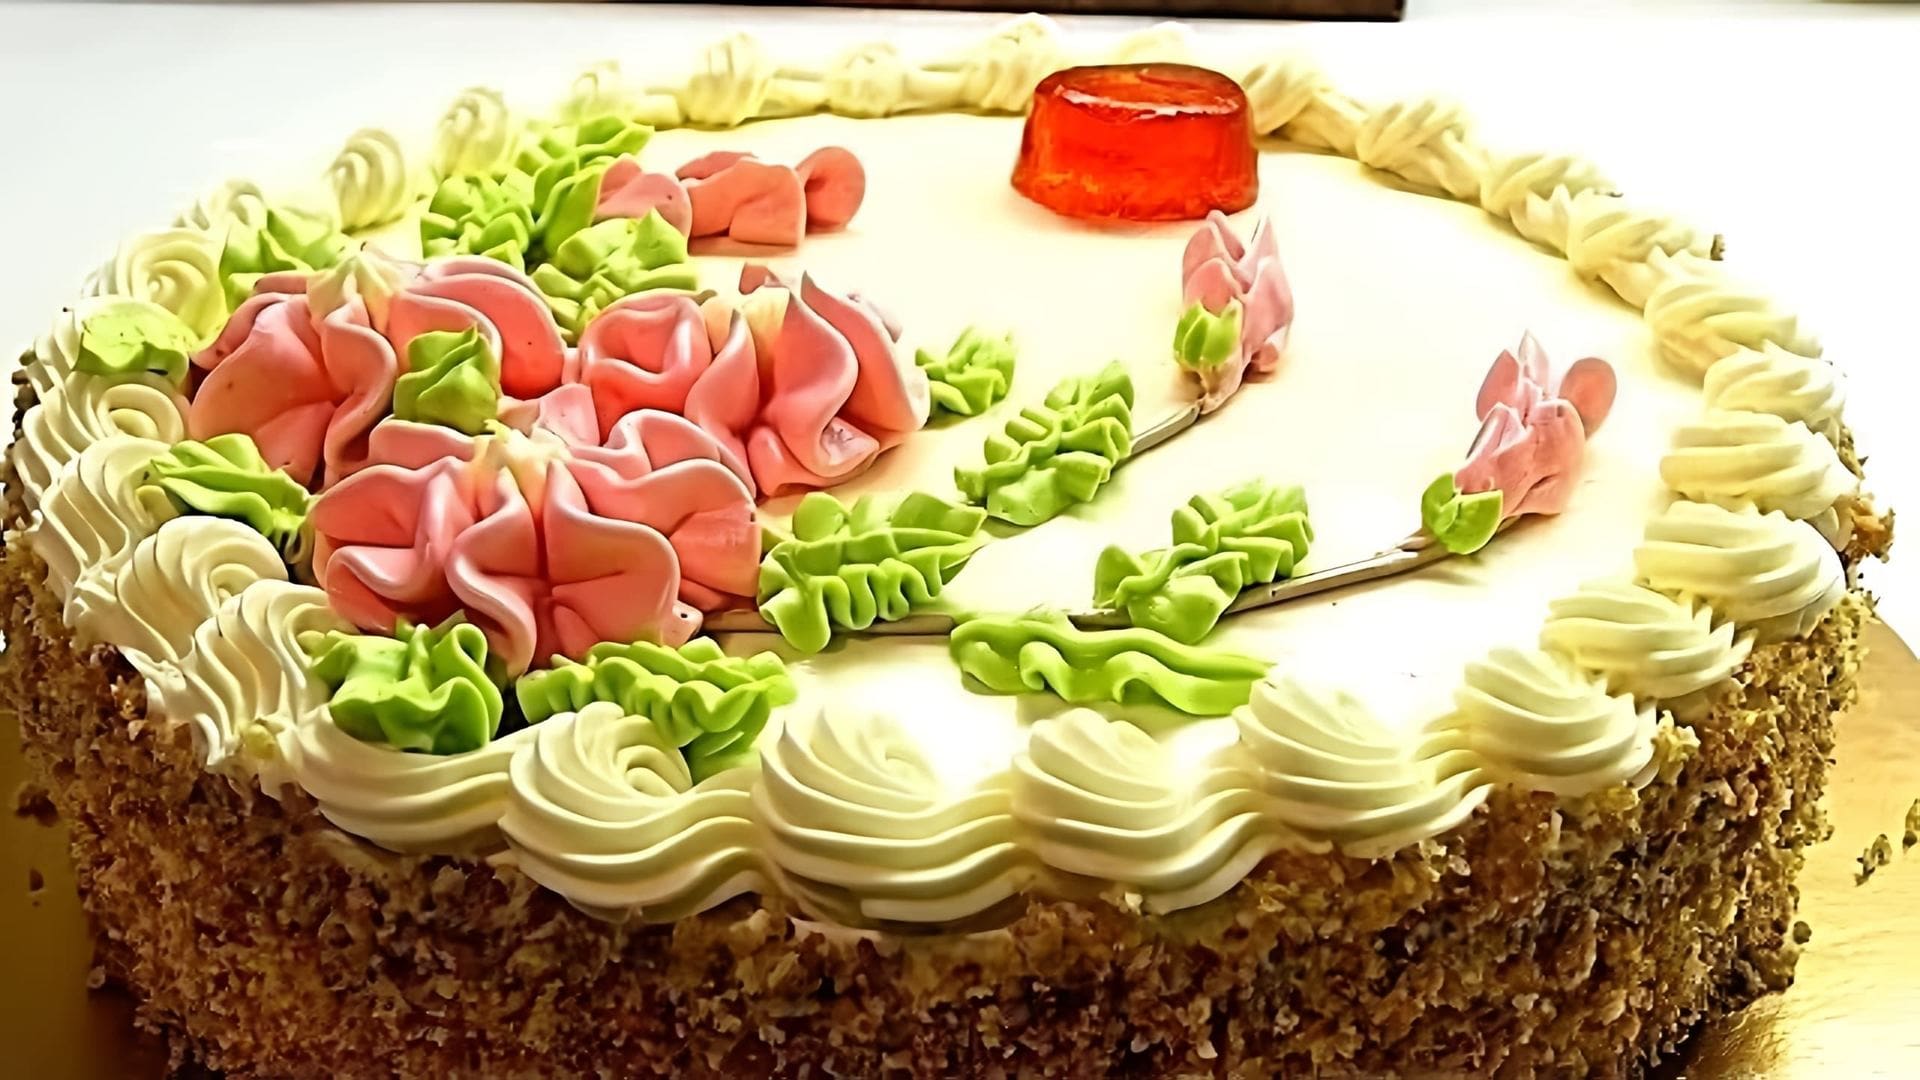 В этом видео демонстрируется рецепт приготовления советского "Бисквитно-кремового" торта